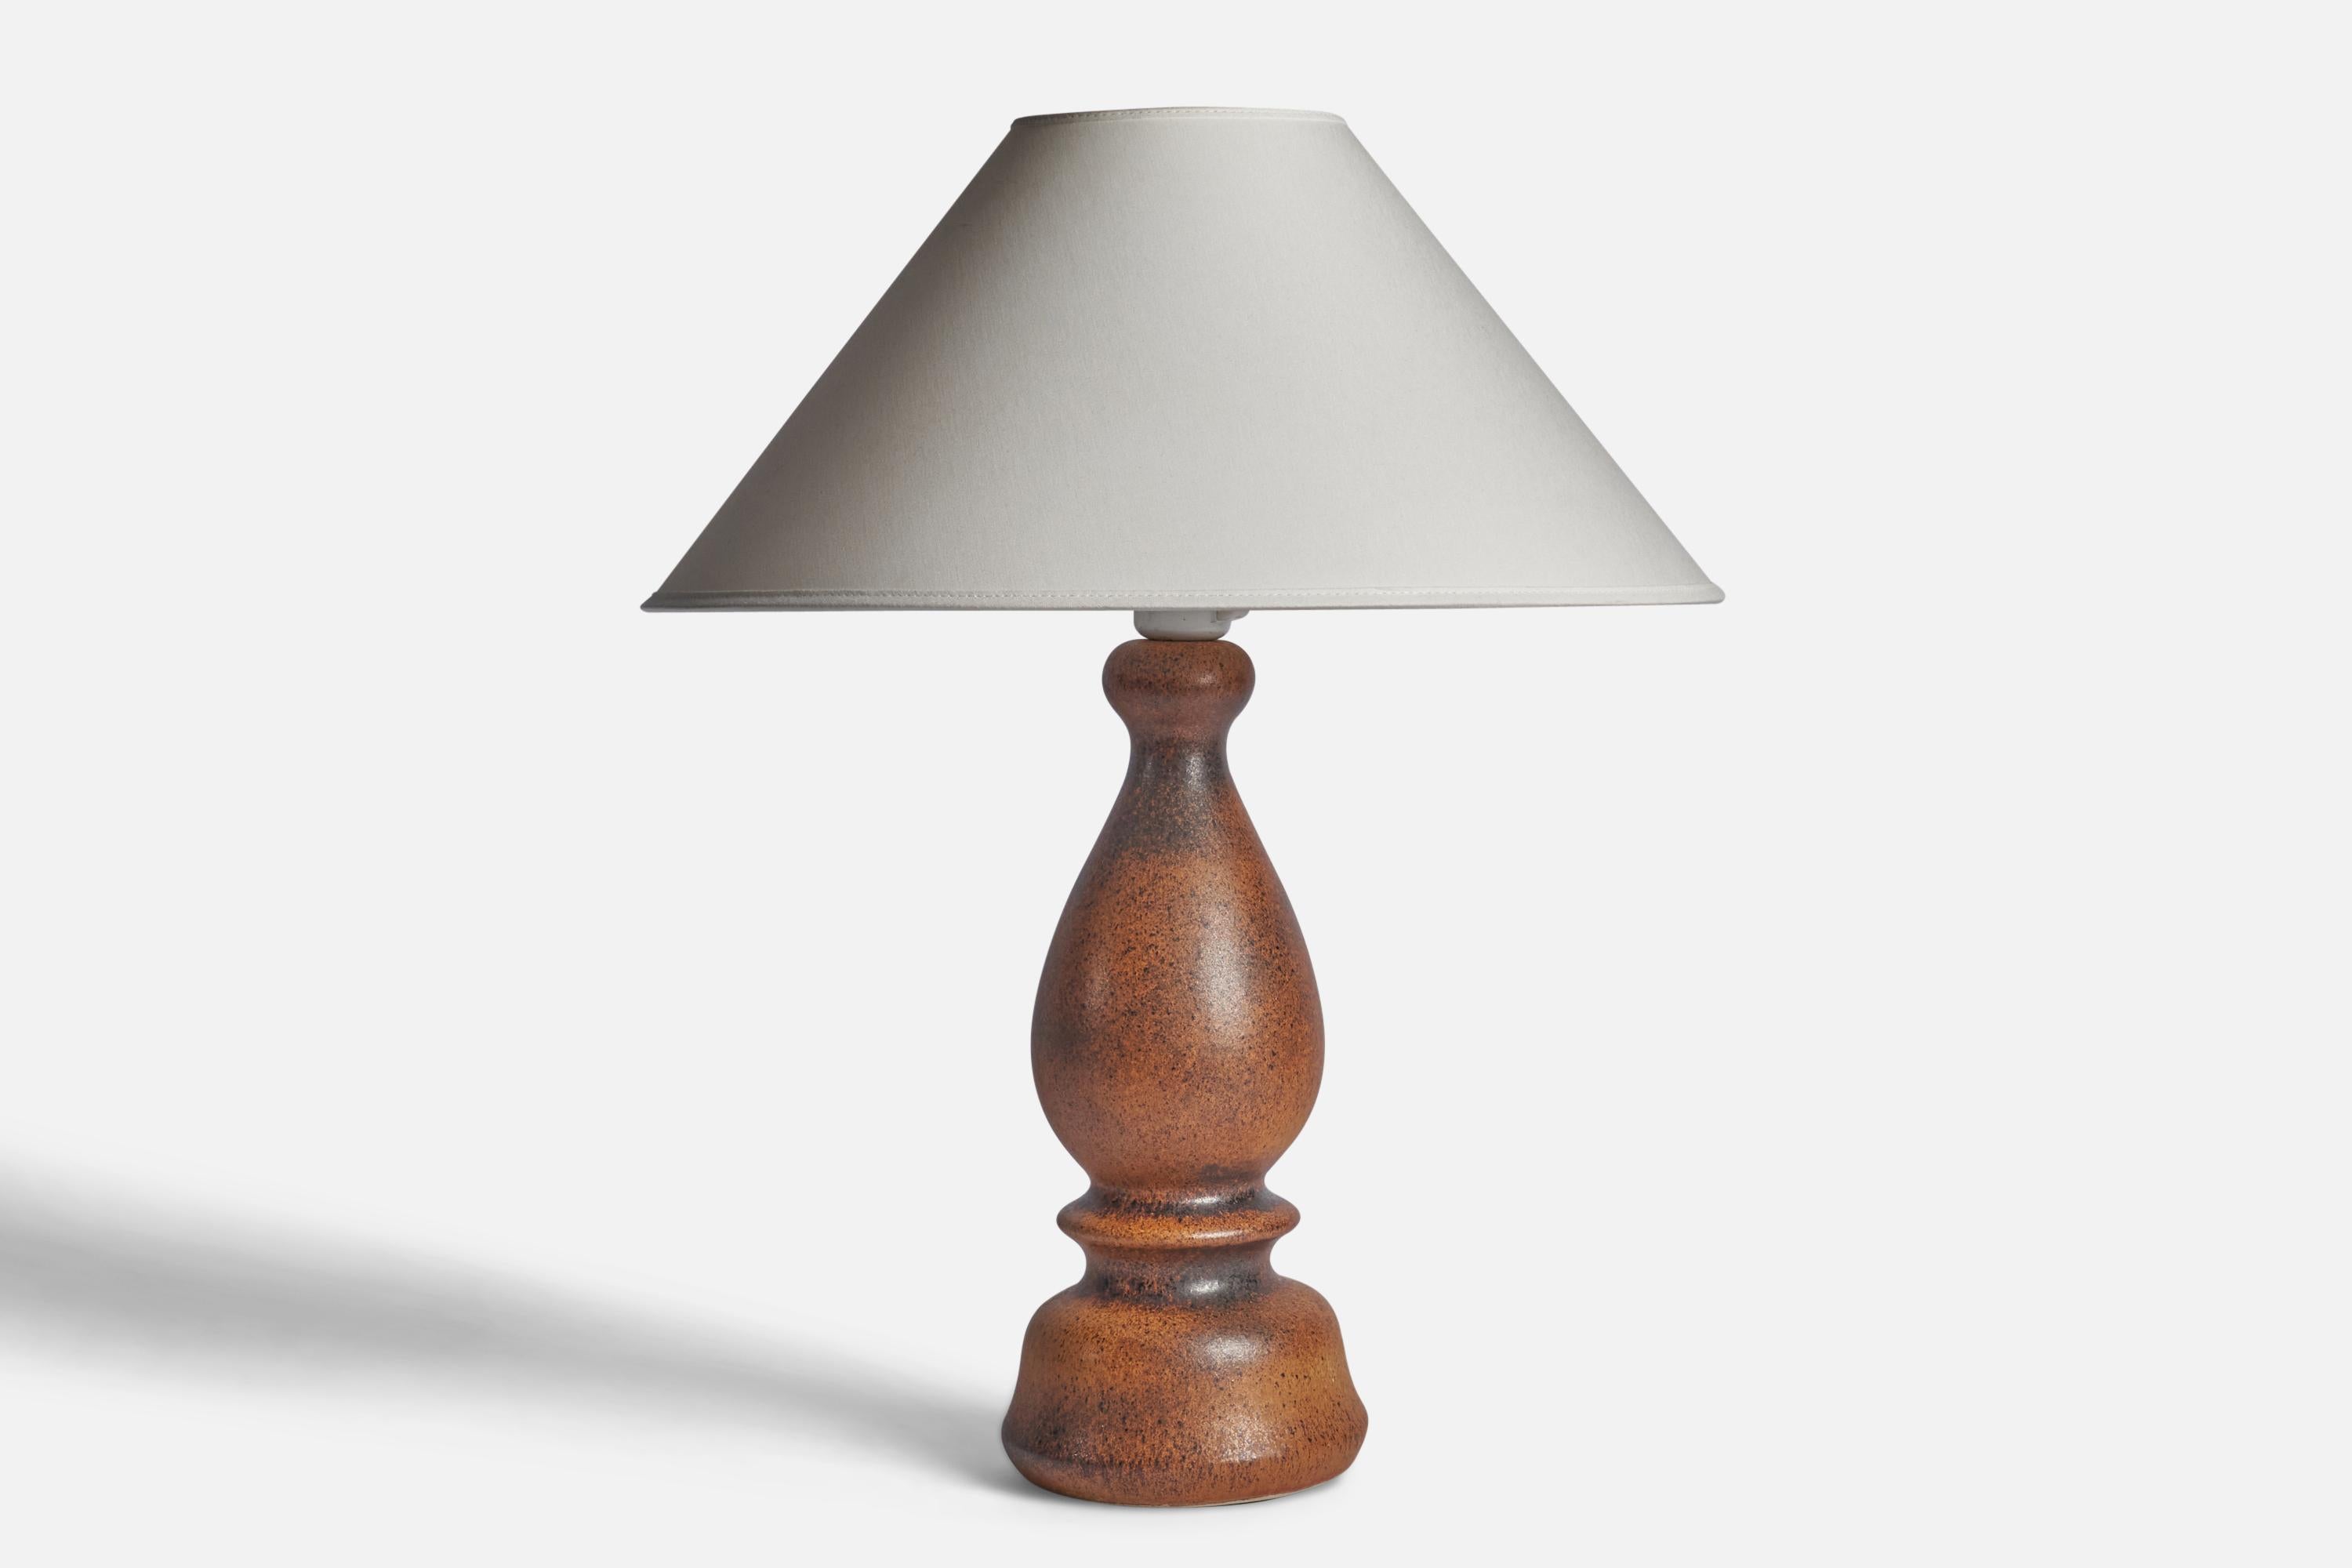 Lampe de table en grès émaillé brun, conçue par Bruno Karlsson et produite par Ego Stengods, Suède, années 1960.

Dimensions de la lampe (pouces) : 15.5